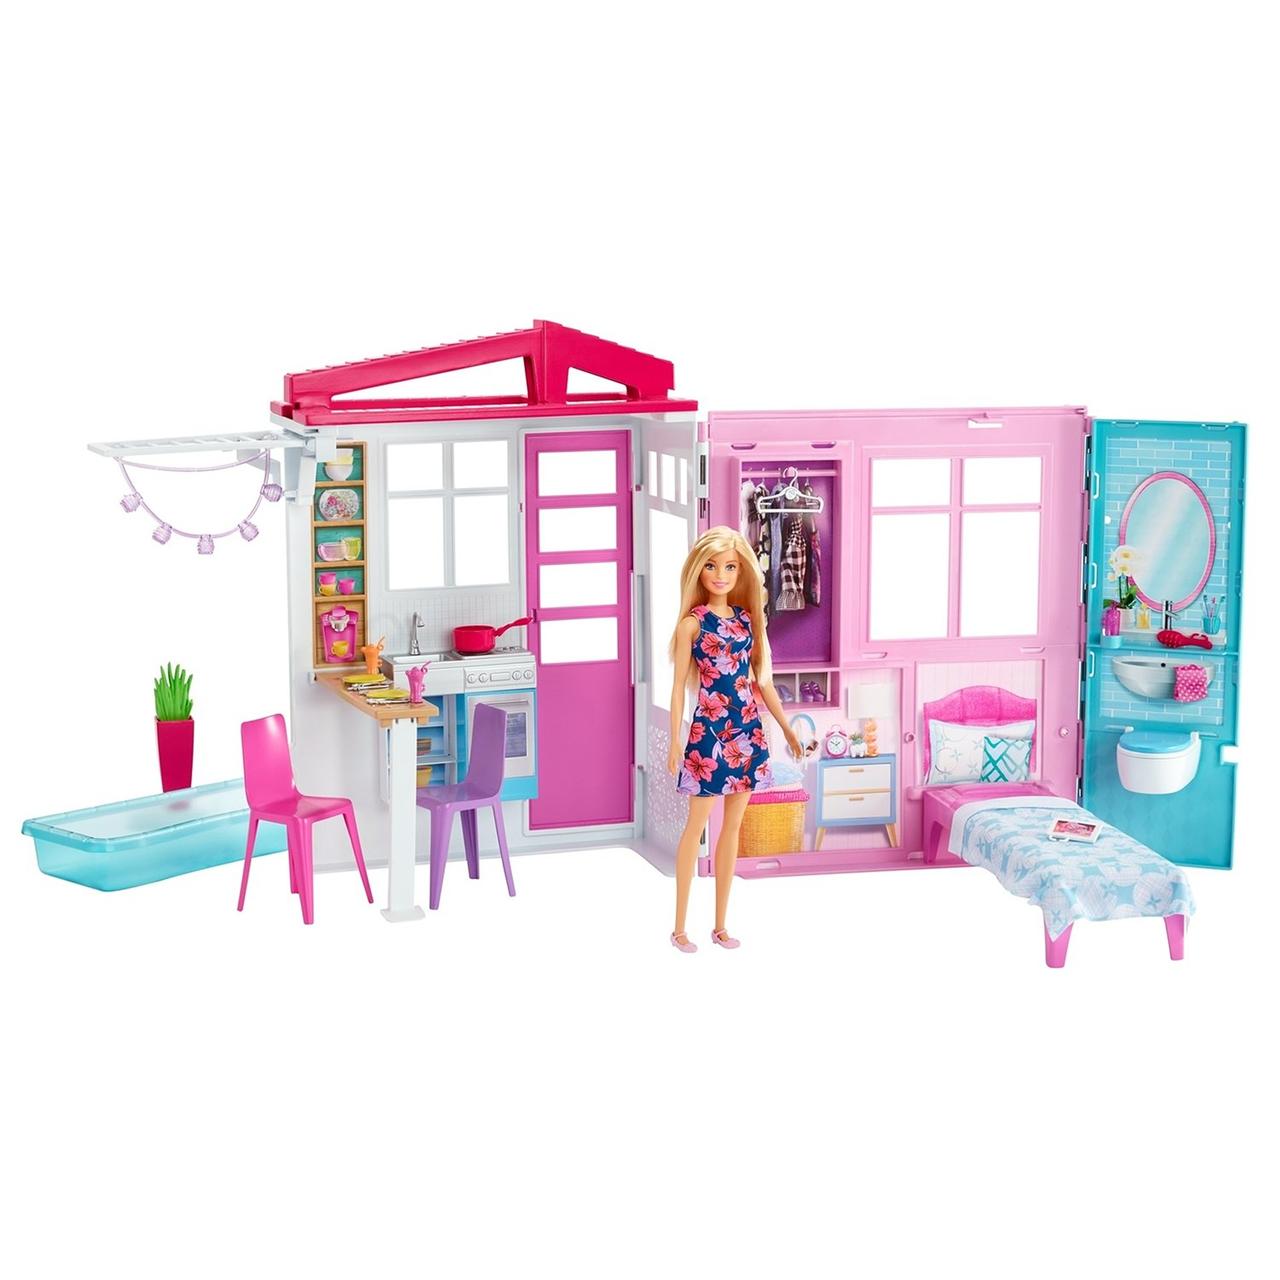 Barbie Игровой набор Раскладной Дом Барби с мебелью и аксессуарами, FXG55